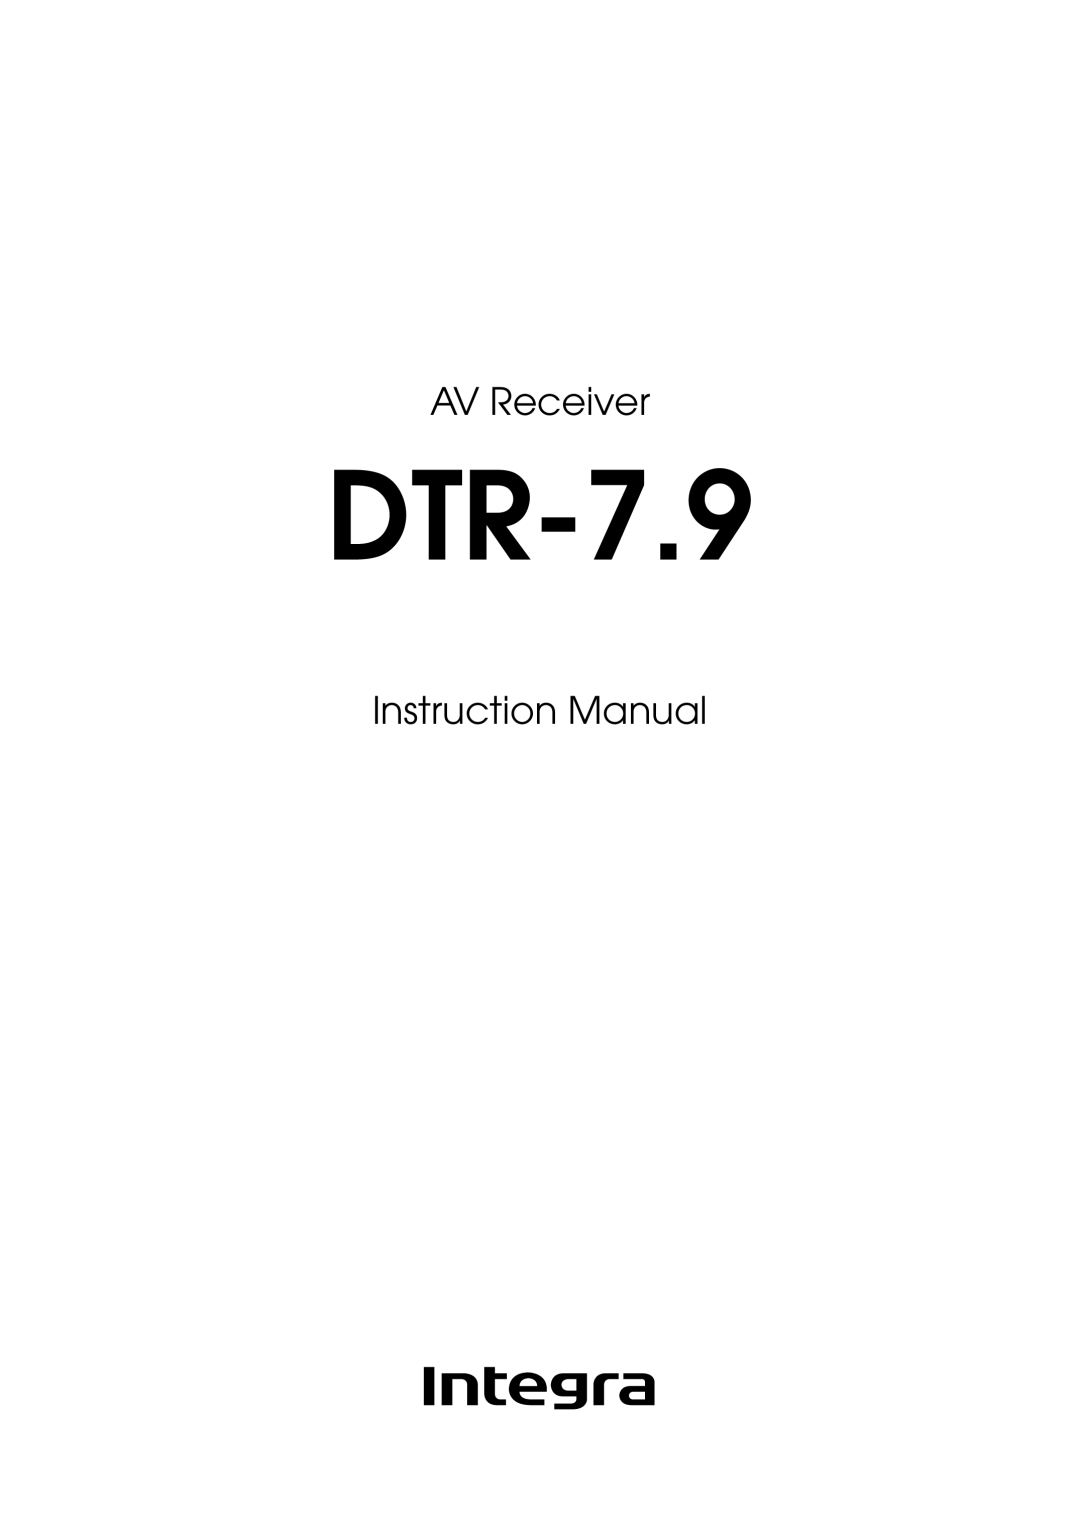 Onkyo DTR-7.9 instruction manual AV Receiver 